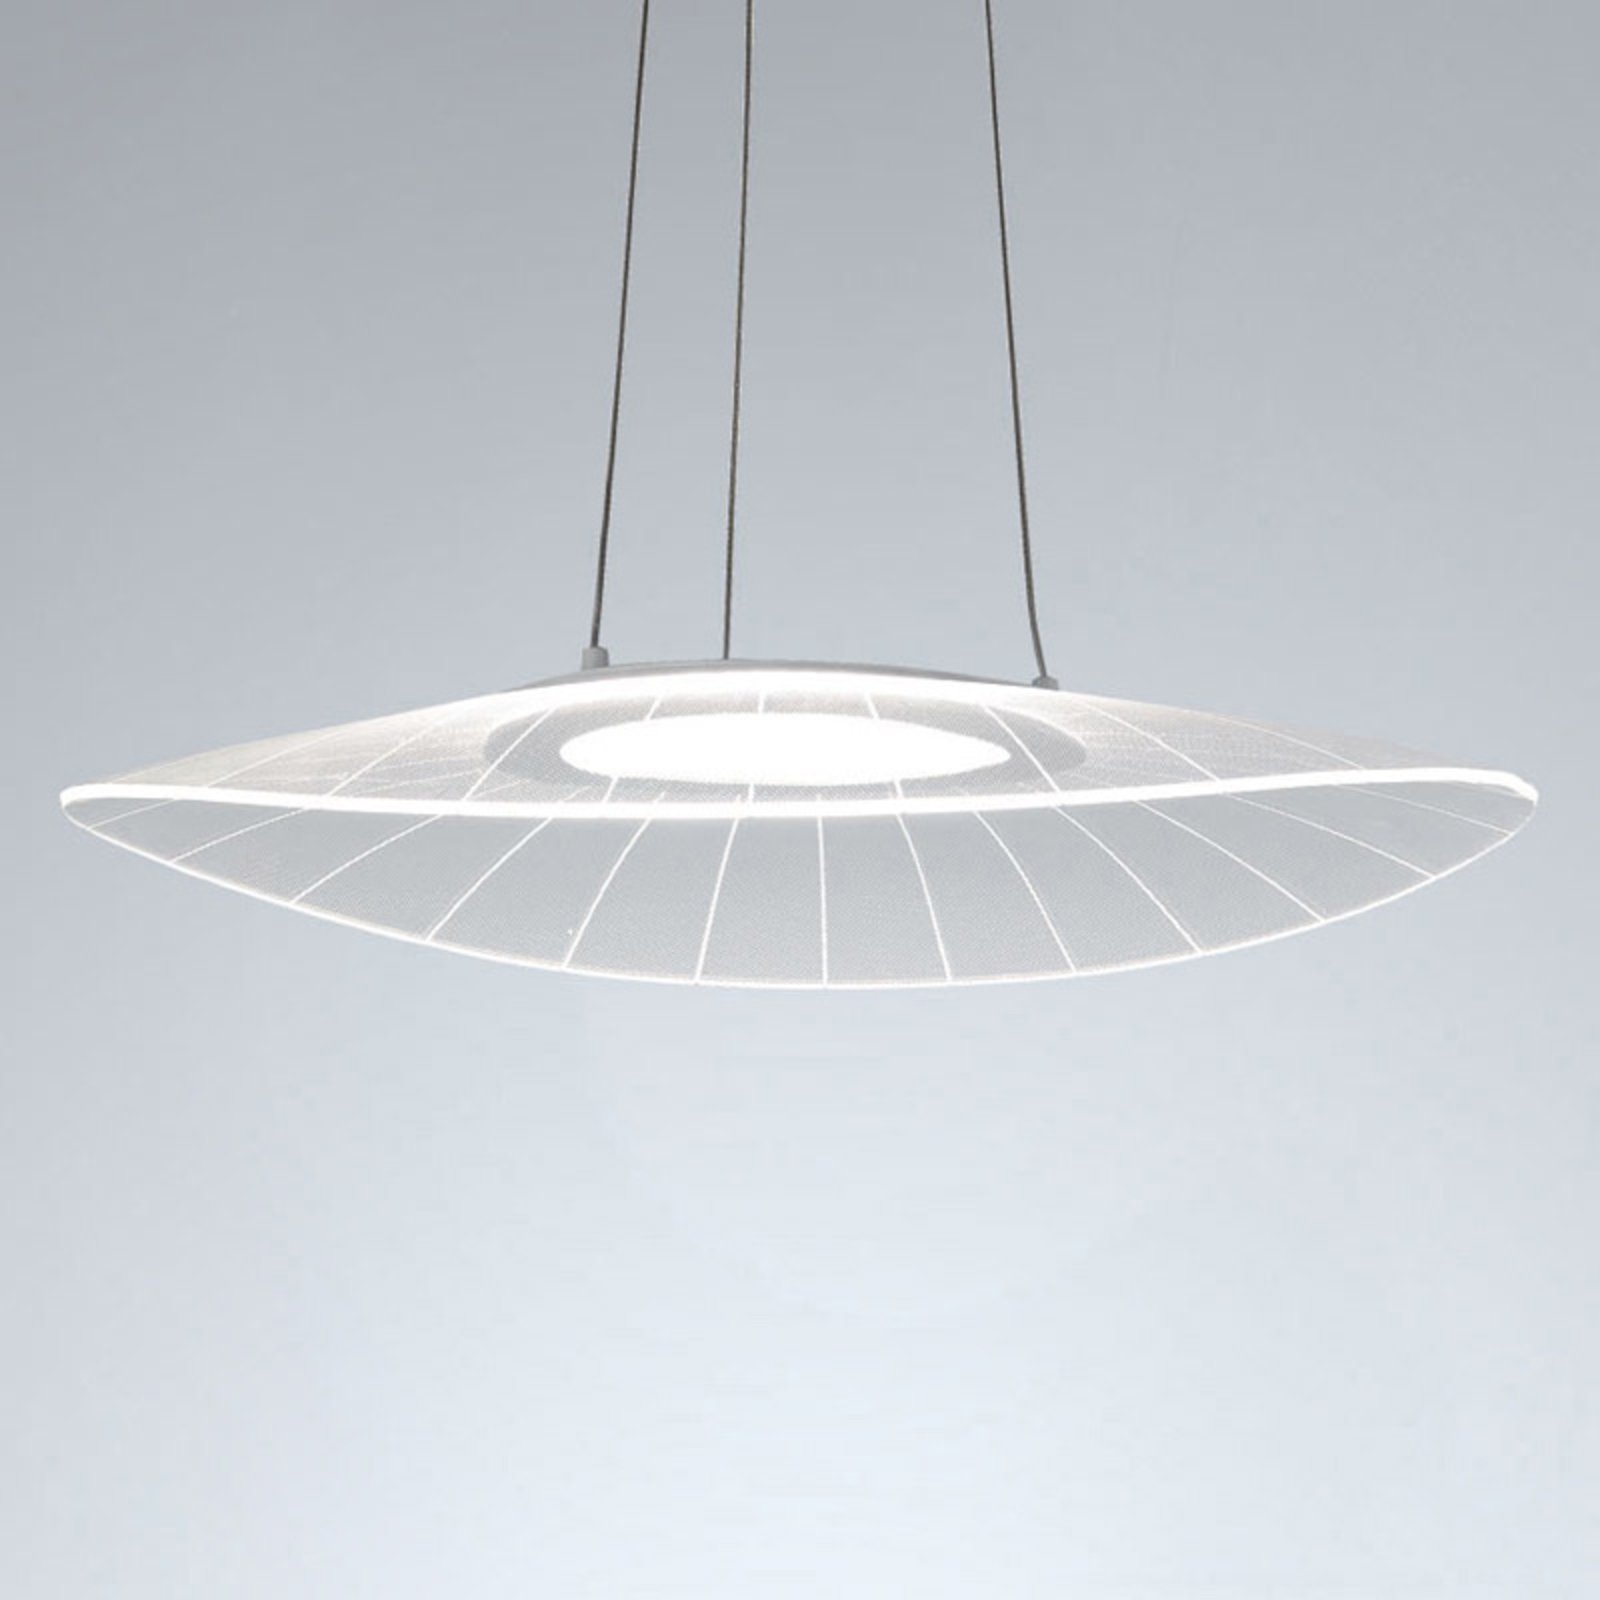 LED sospensione Vela, bianco, ovale, 59 cm x 43 cm